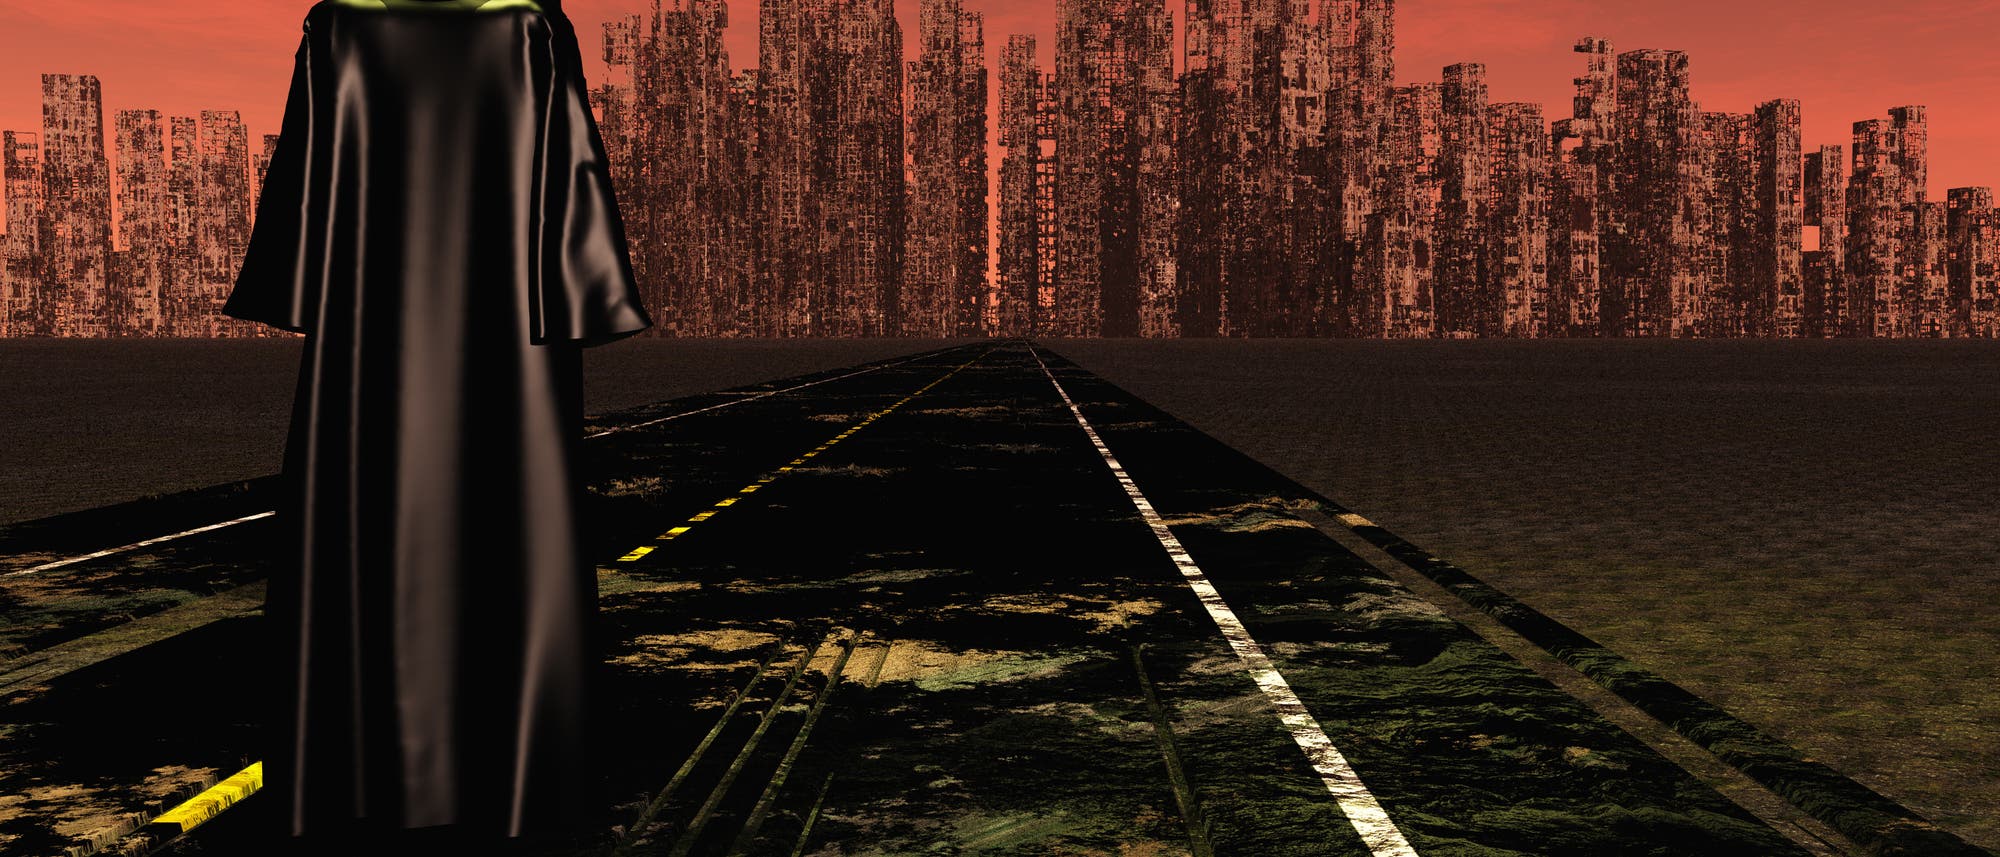 Roter Himmel, dunkle Gebäude, irgendwas Robo-artiges im Vordergrund - fertig ist das dystopische Apokalypse-Symbolbild.